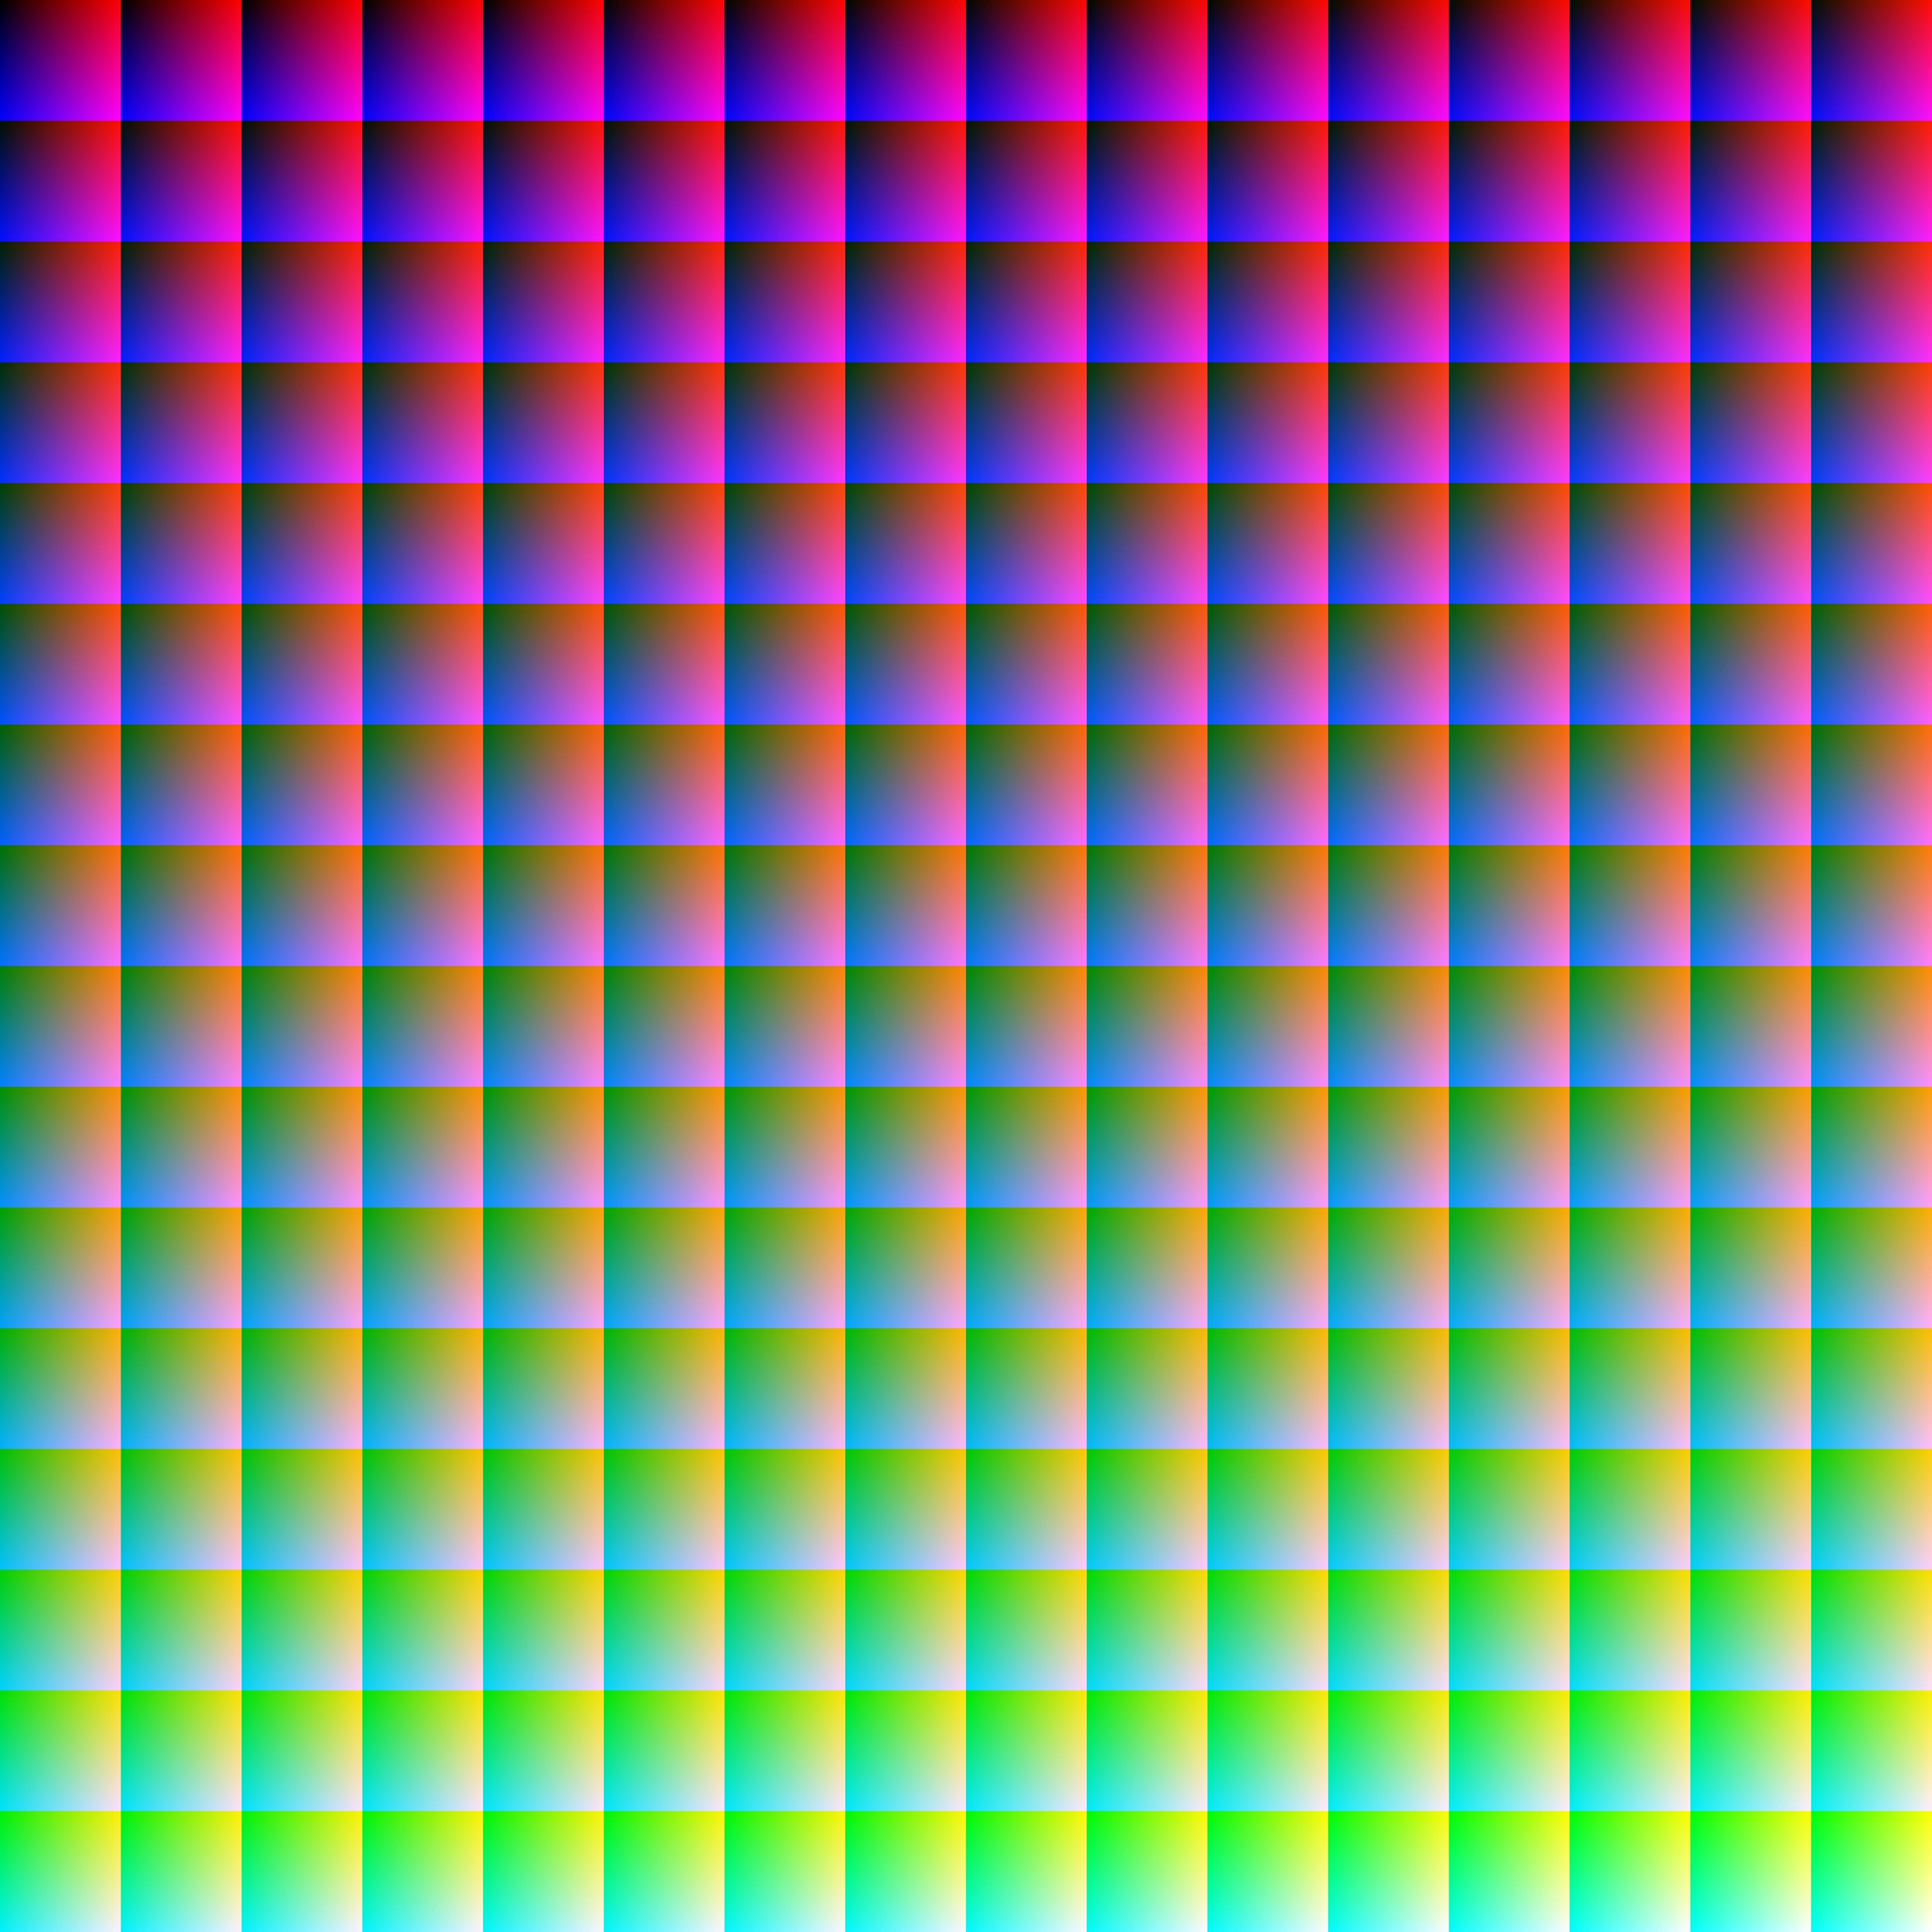 Crean una imagen que contiene los 16.777.216 colores RGB, y no es como imaginas